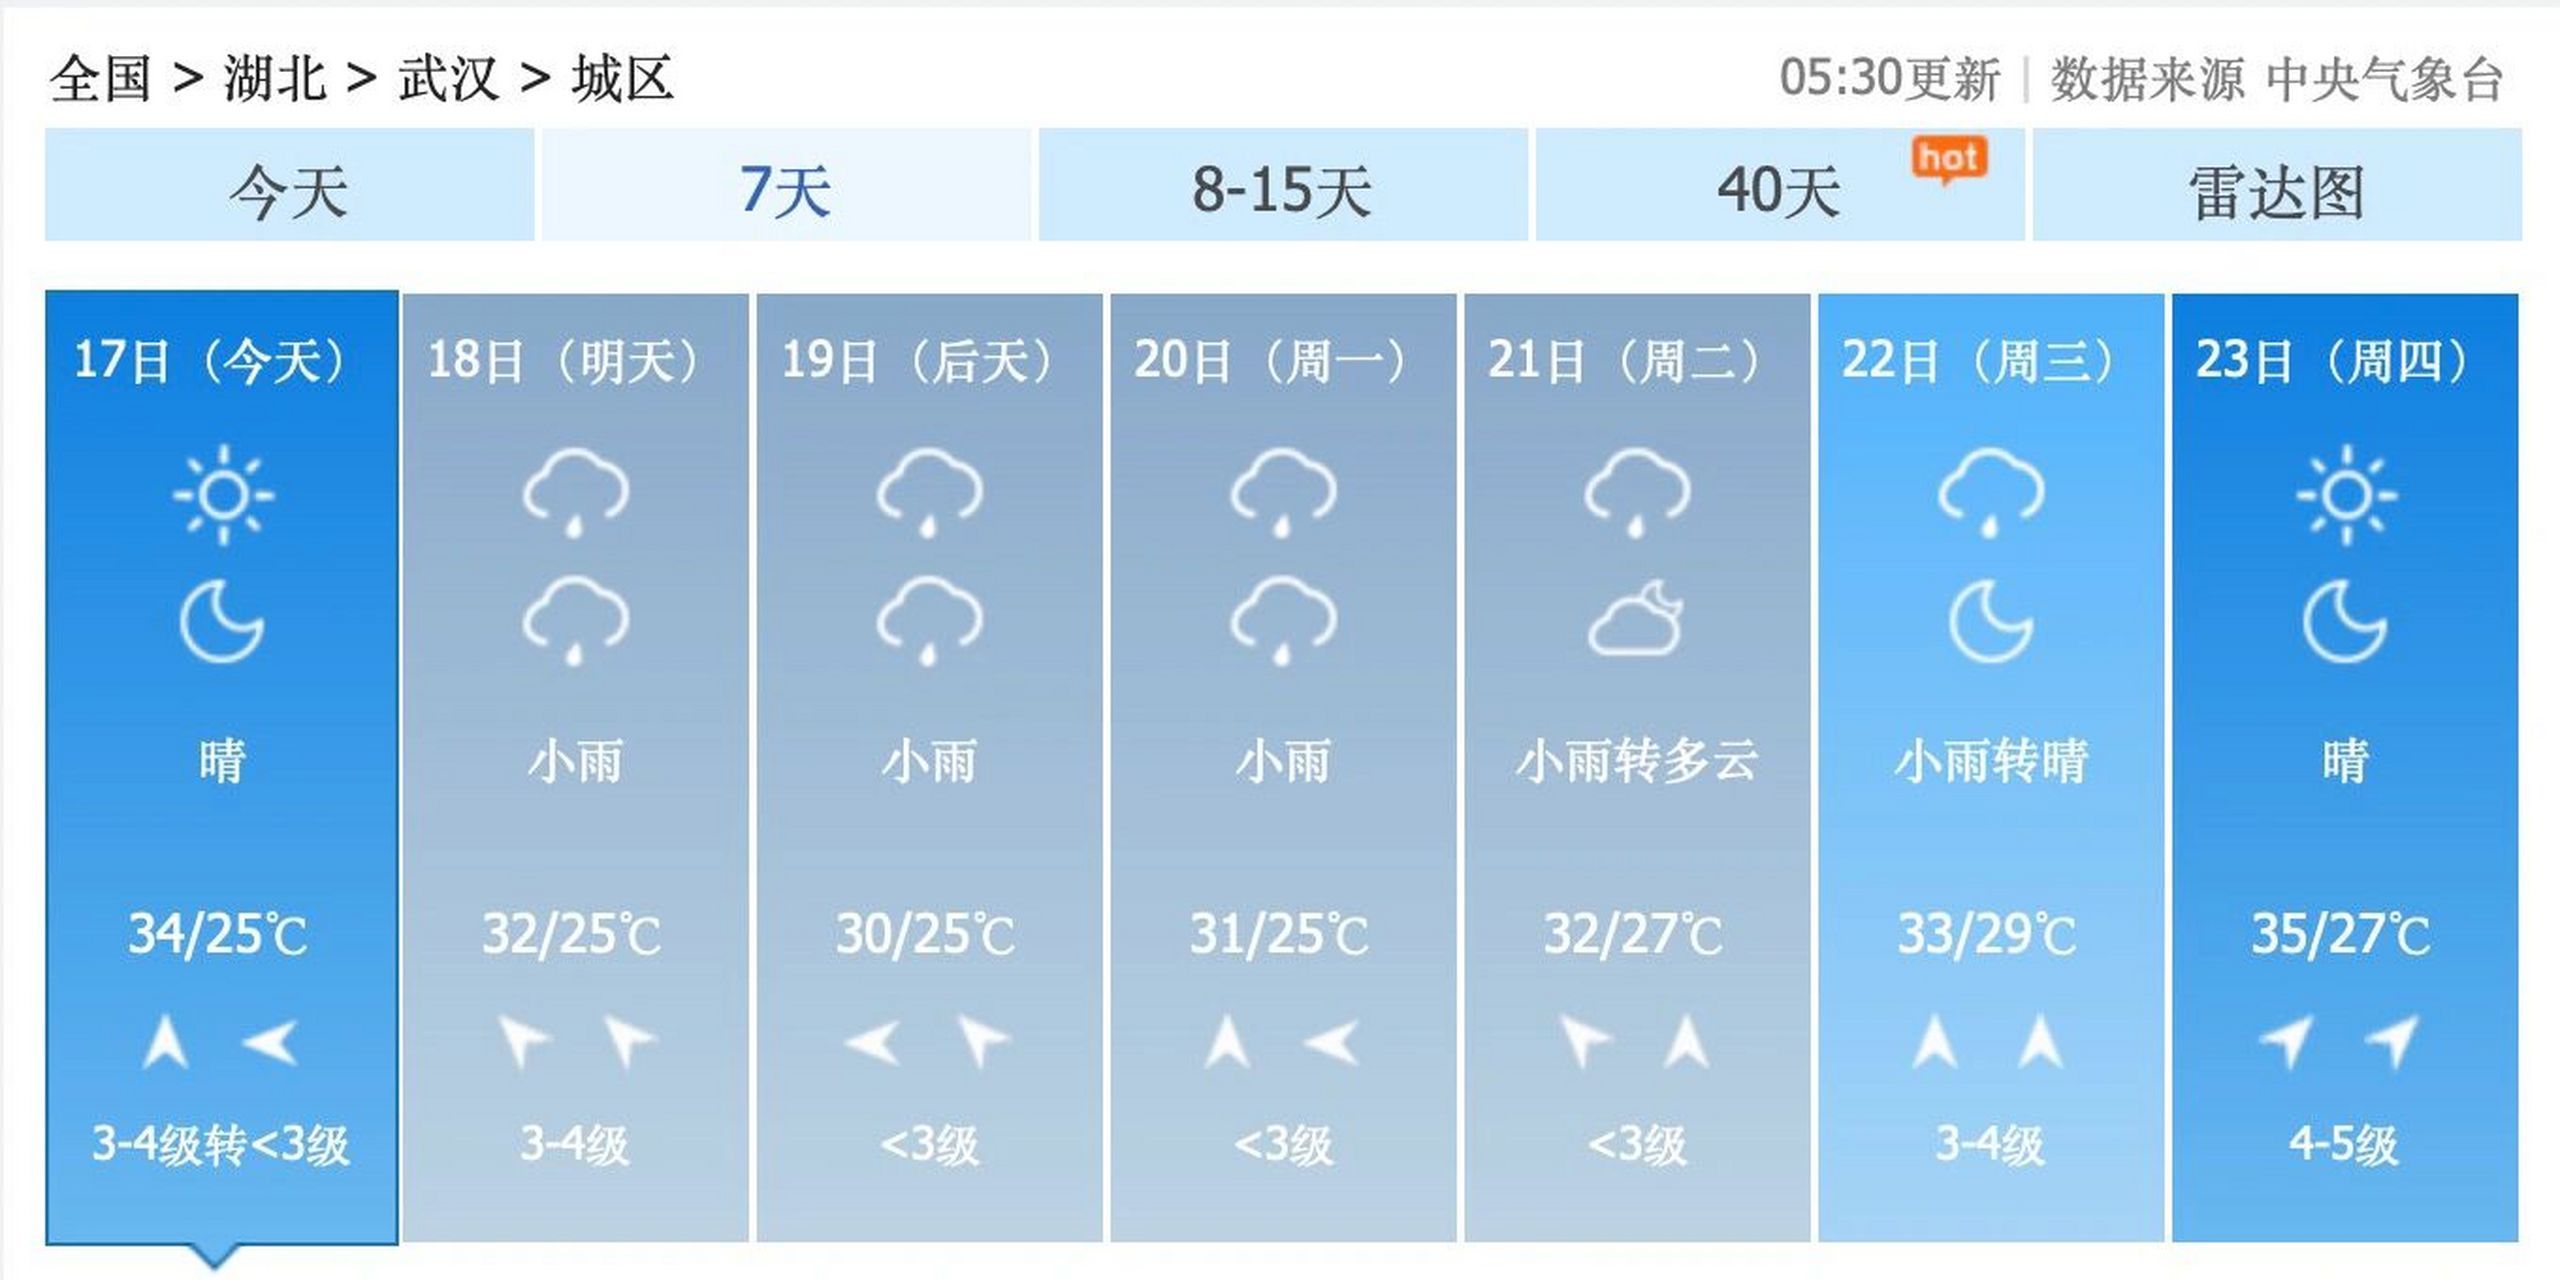 嗯,而且,接下来,武汉市,虽然也会经常有点小闷热……但是比起南京市